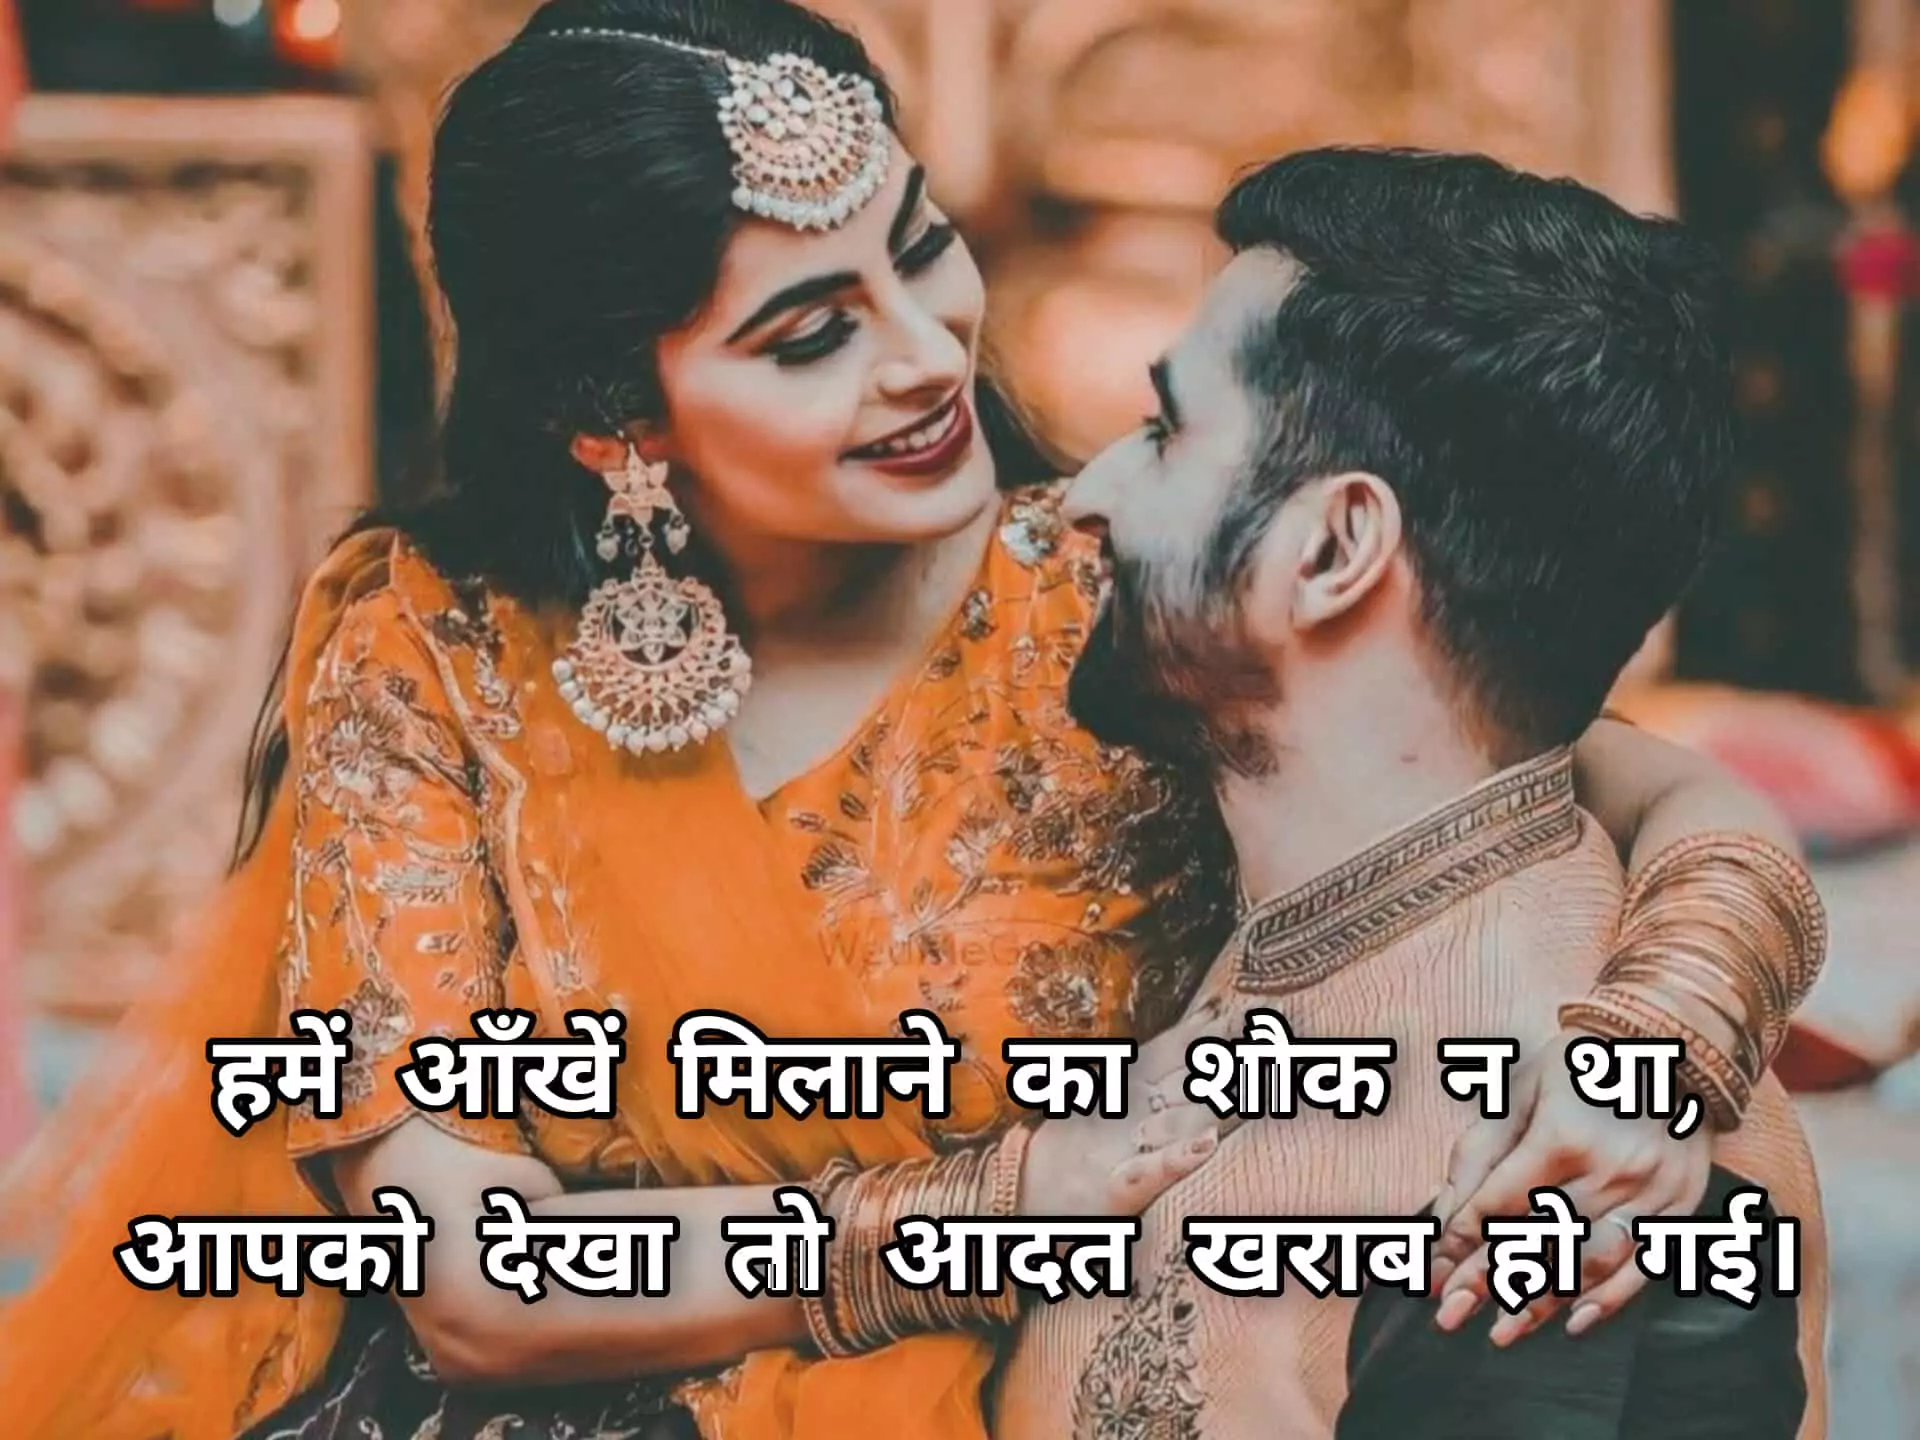 Romantic Shayari For Husband